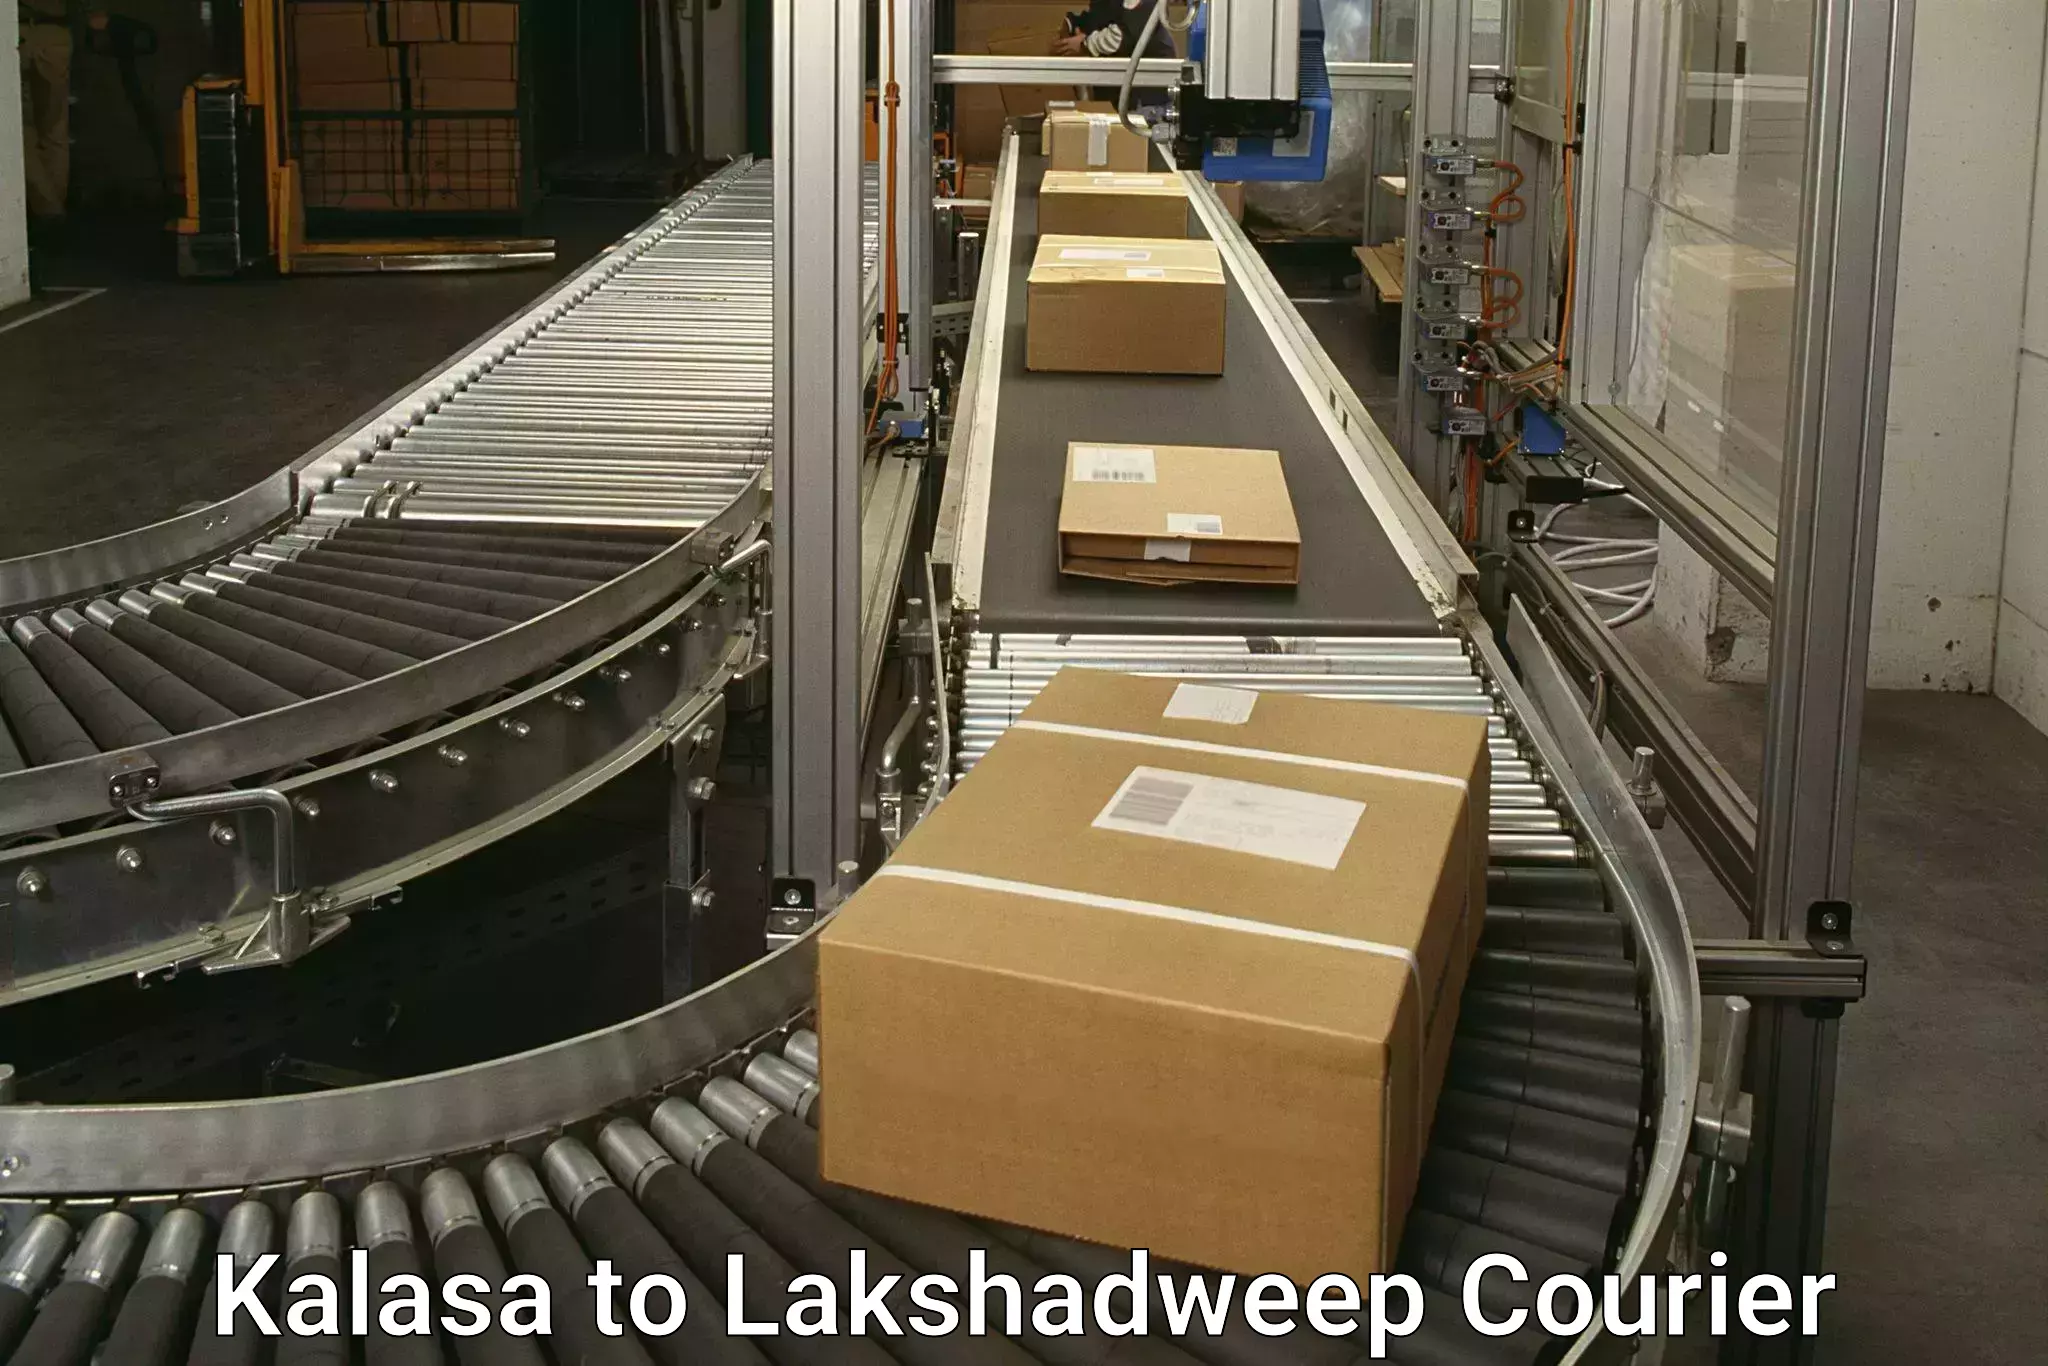 Express delivery solutions Kalasa to Lakshadweep